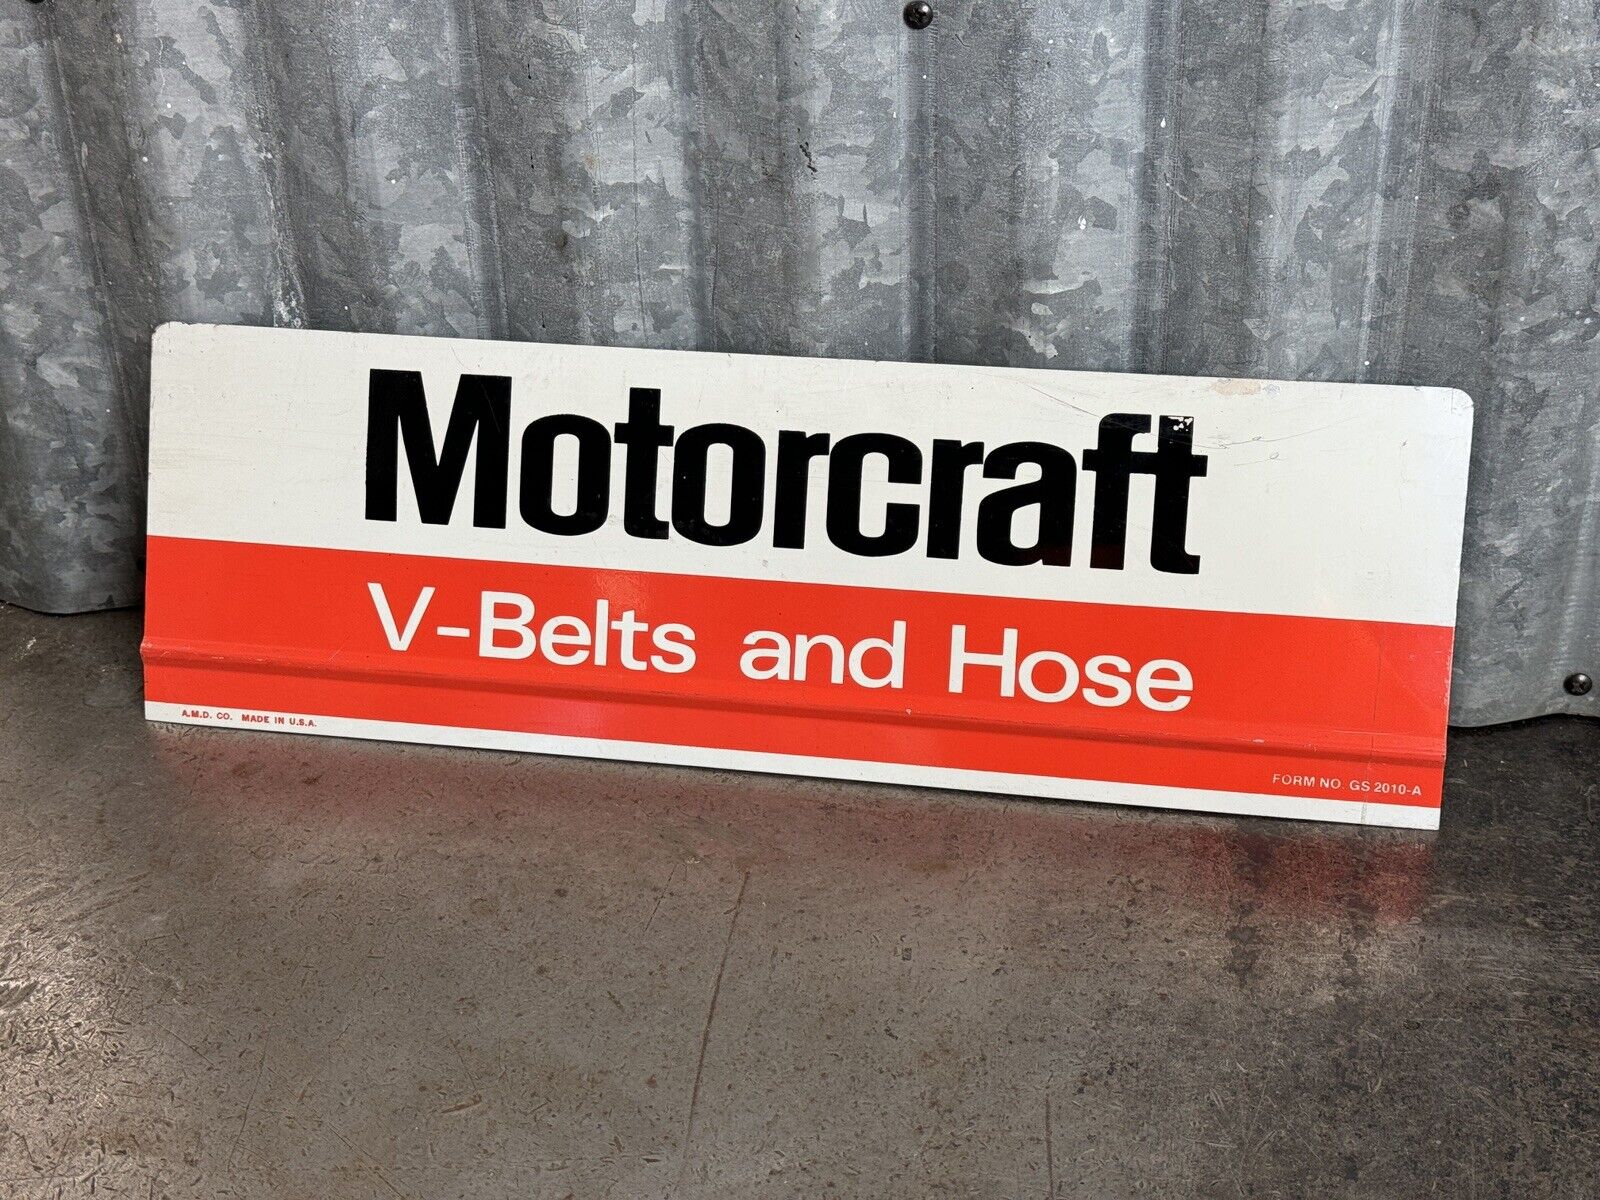 NOS Motorcraft V-Belts and Hoses Sign Vintage Ford Advertising Autolite Vintage